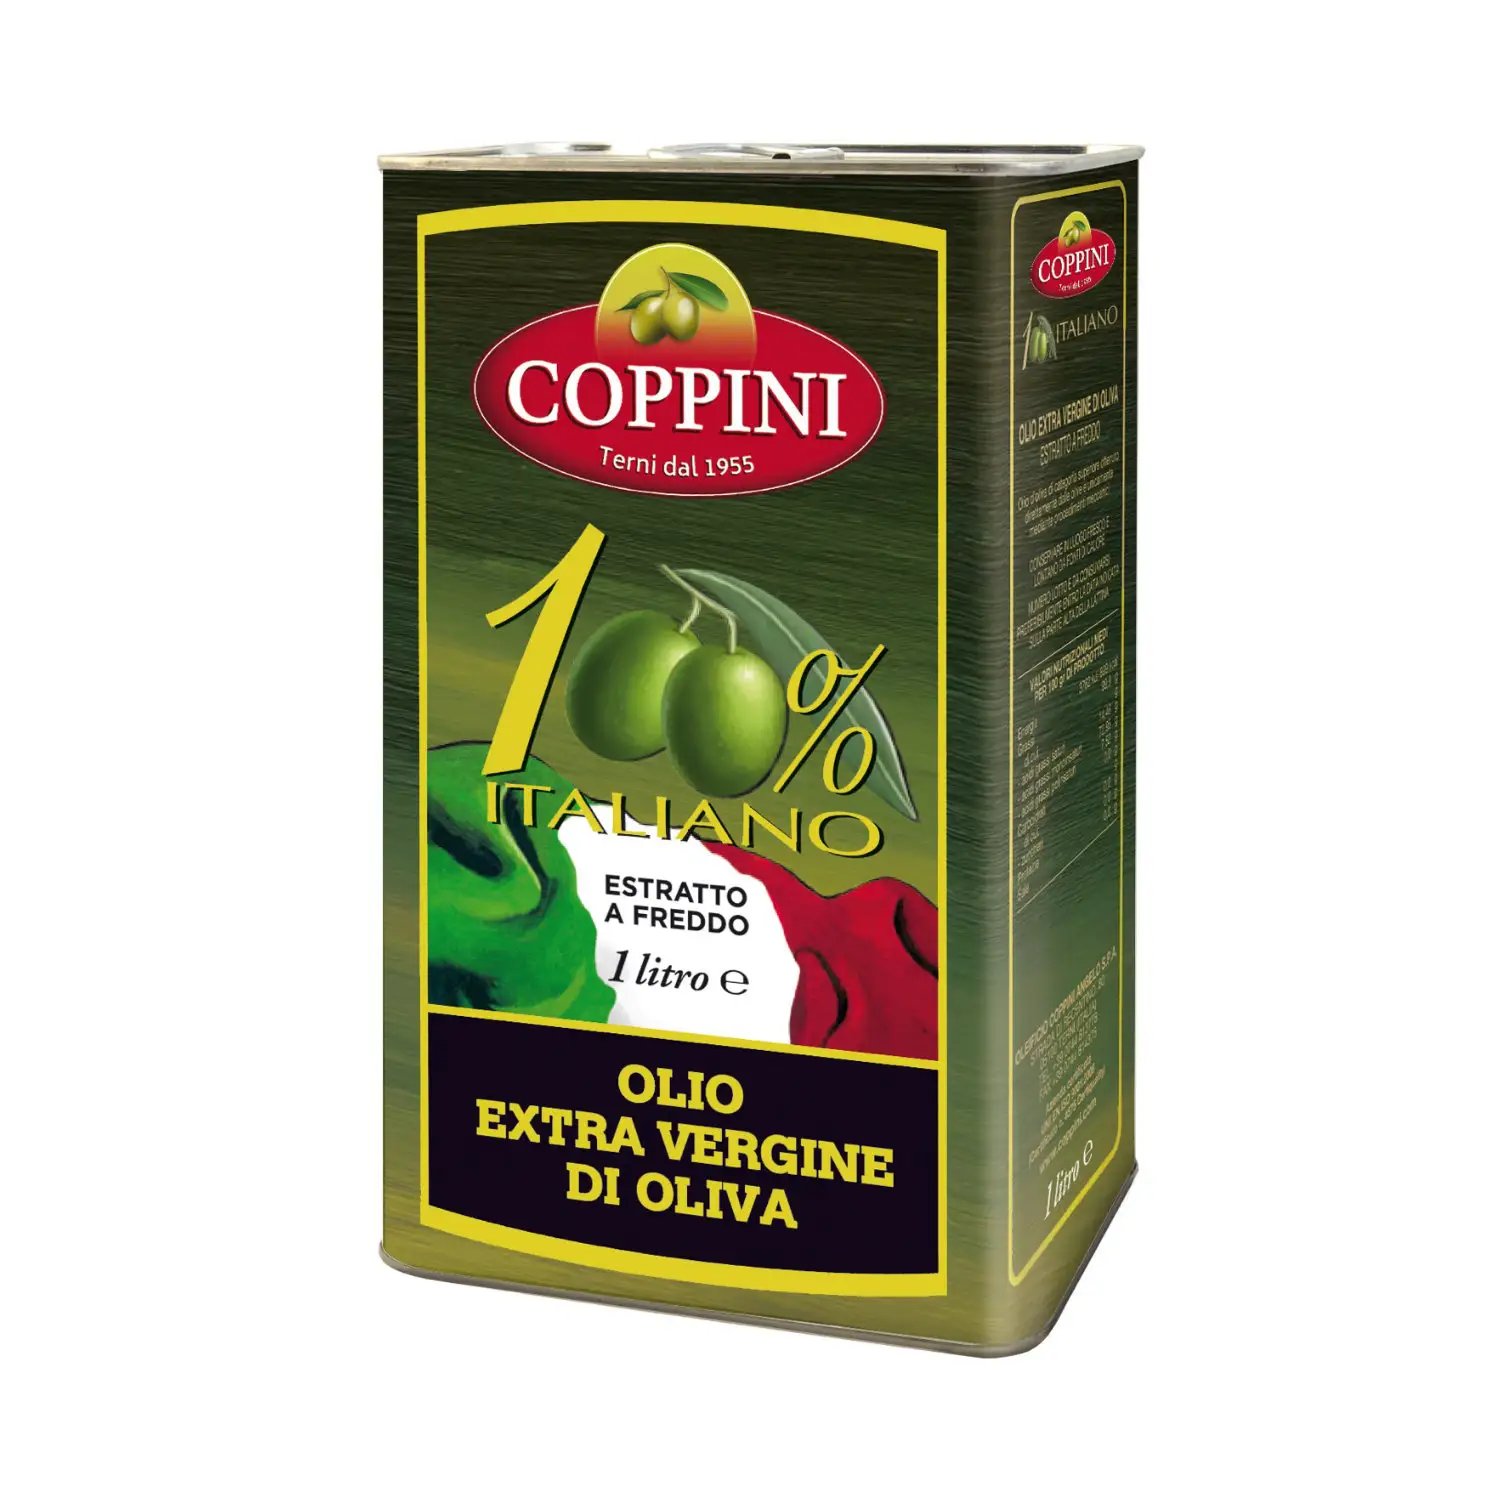 100% Coppini olio extra vergine di oliva italiano-latta da 1 litro spremuto a freddo-gusto squisito e qualità senza pari